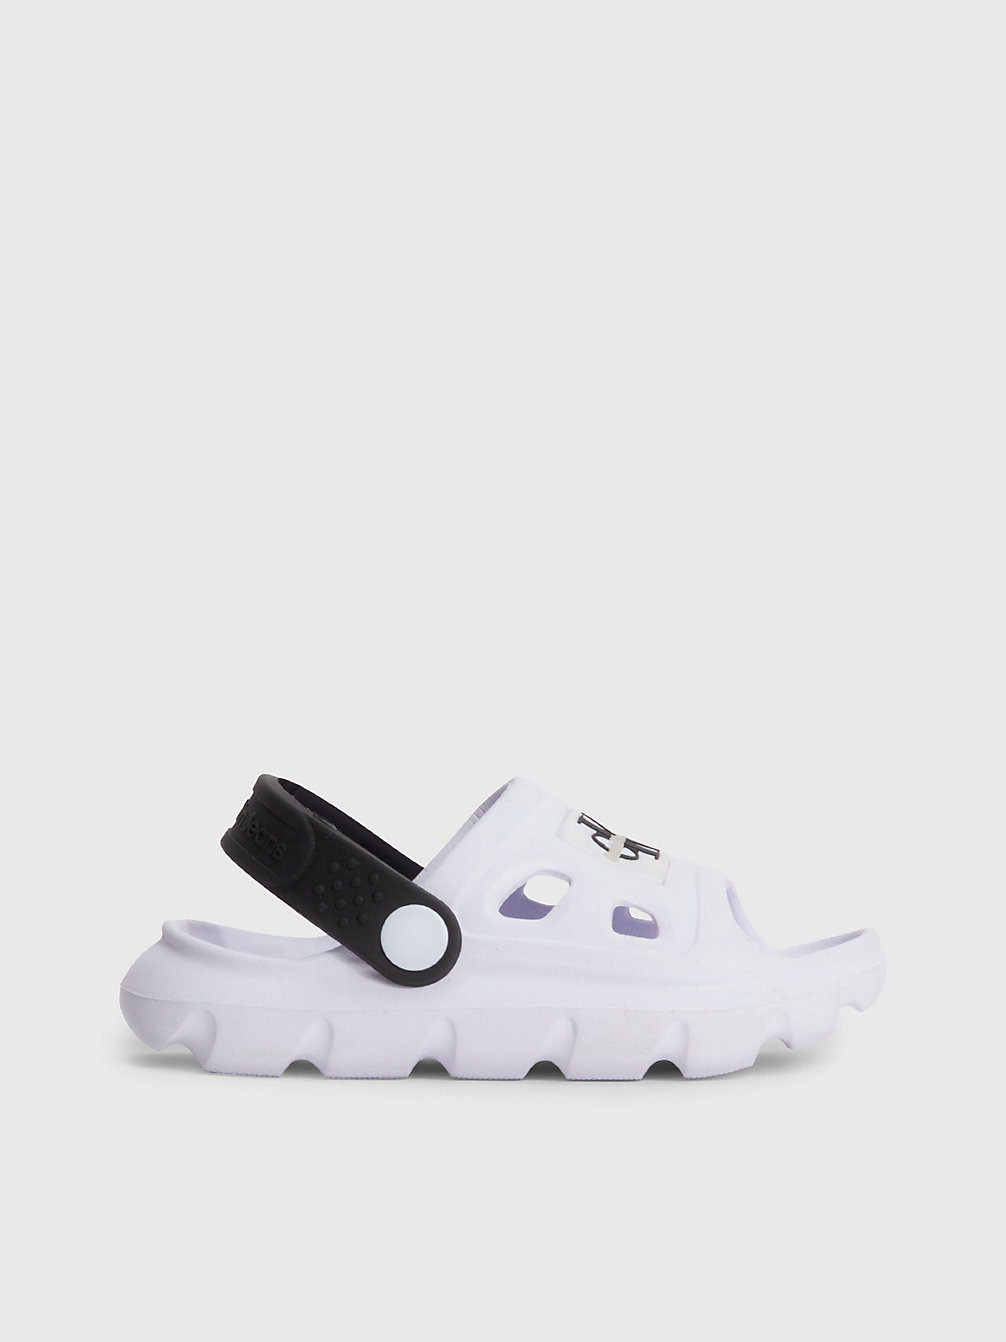 WHITE/BLACK Clog Sandals undefined kids unisex Calvin Klein